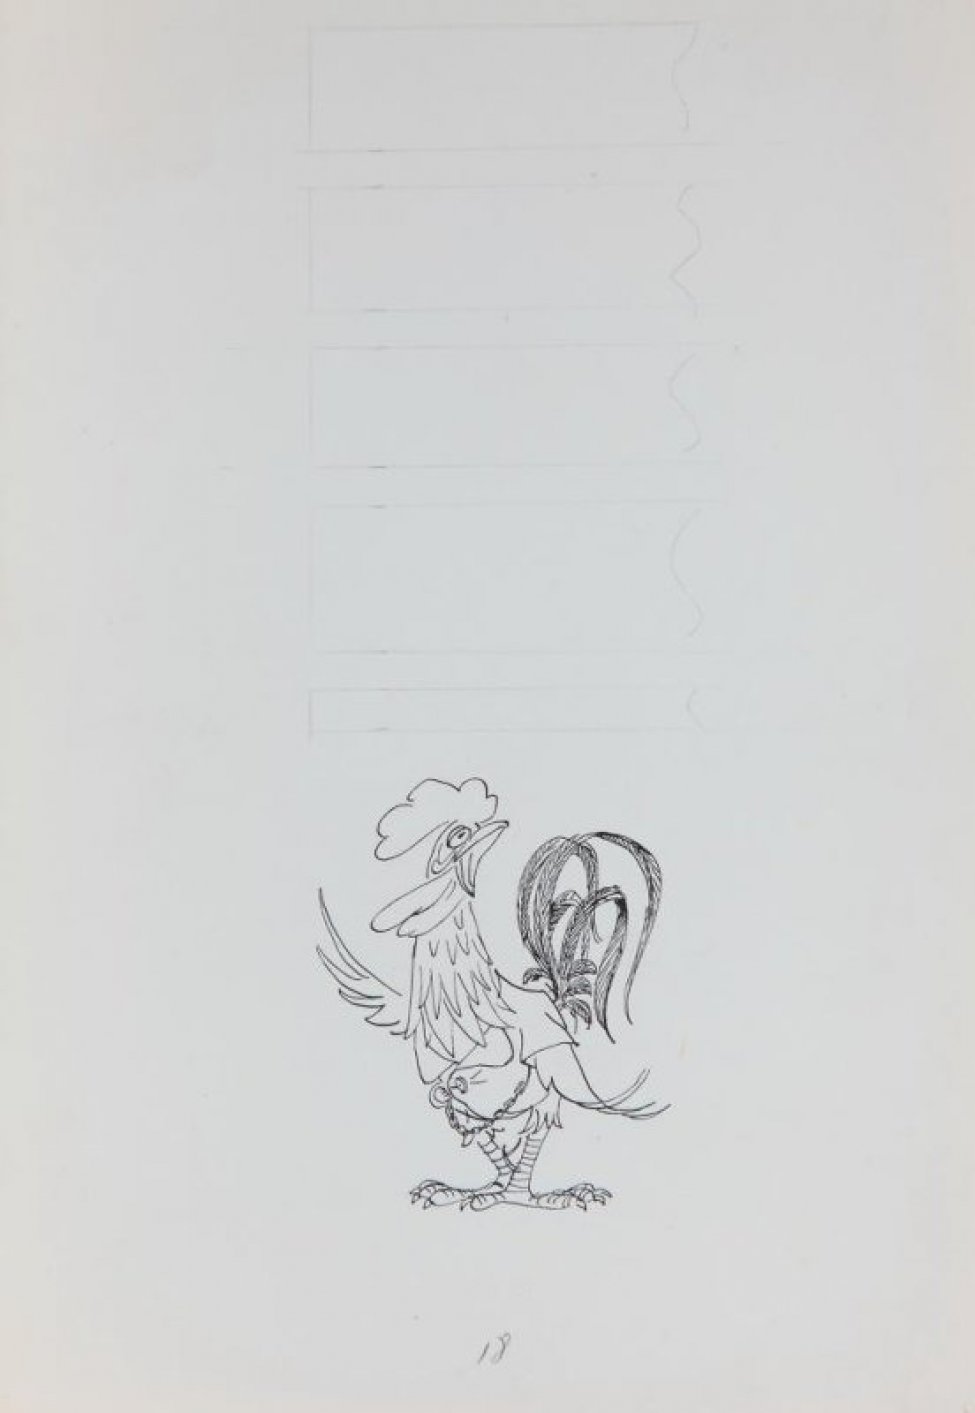 В нижней части листа - стилизованное изображение петуха с раскрытым клювом, в жилете с цепочкой. В верхней части - разметка карандашом для текста.